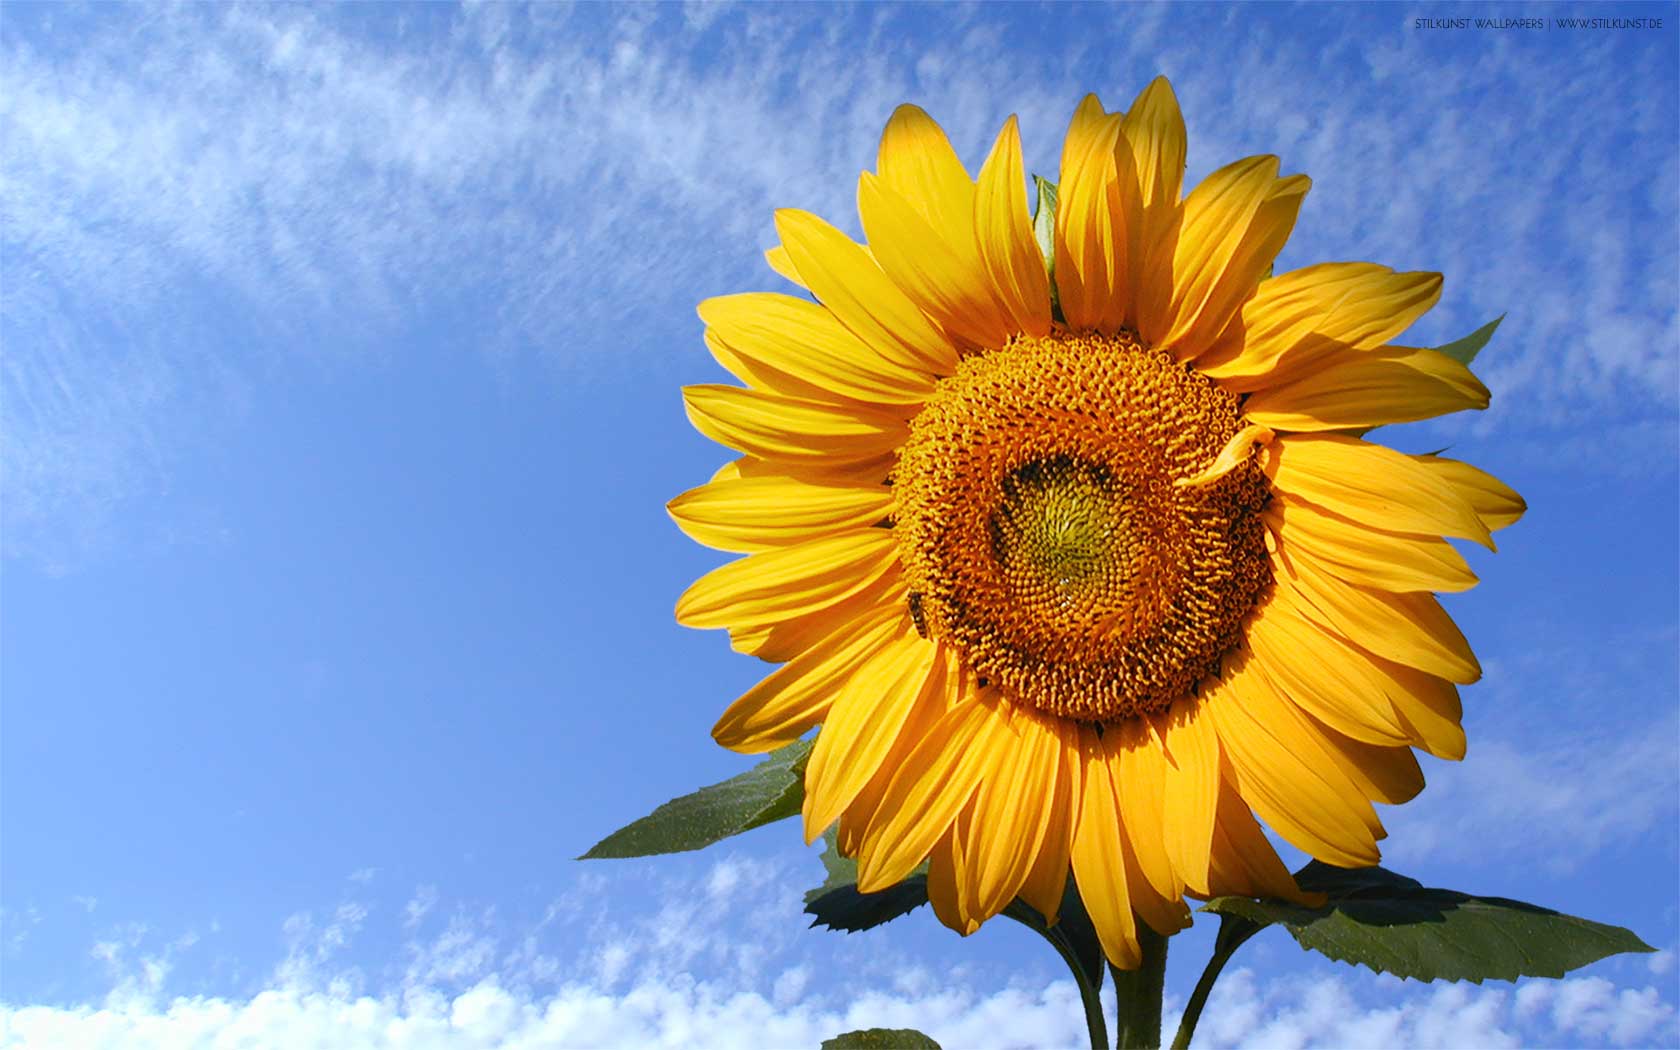 Sonnenblume | 1680 x 1050px | Bild: ©by Sabrina | Reiner | www.stilkunst.de | Lizenz: CC BY-SA